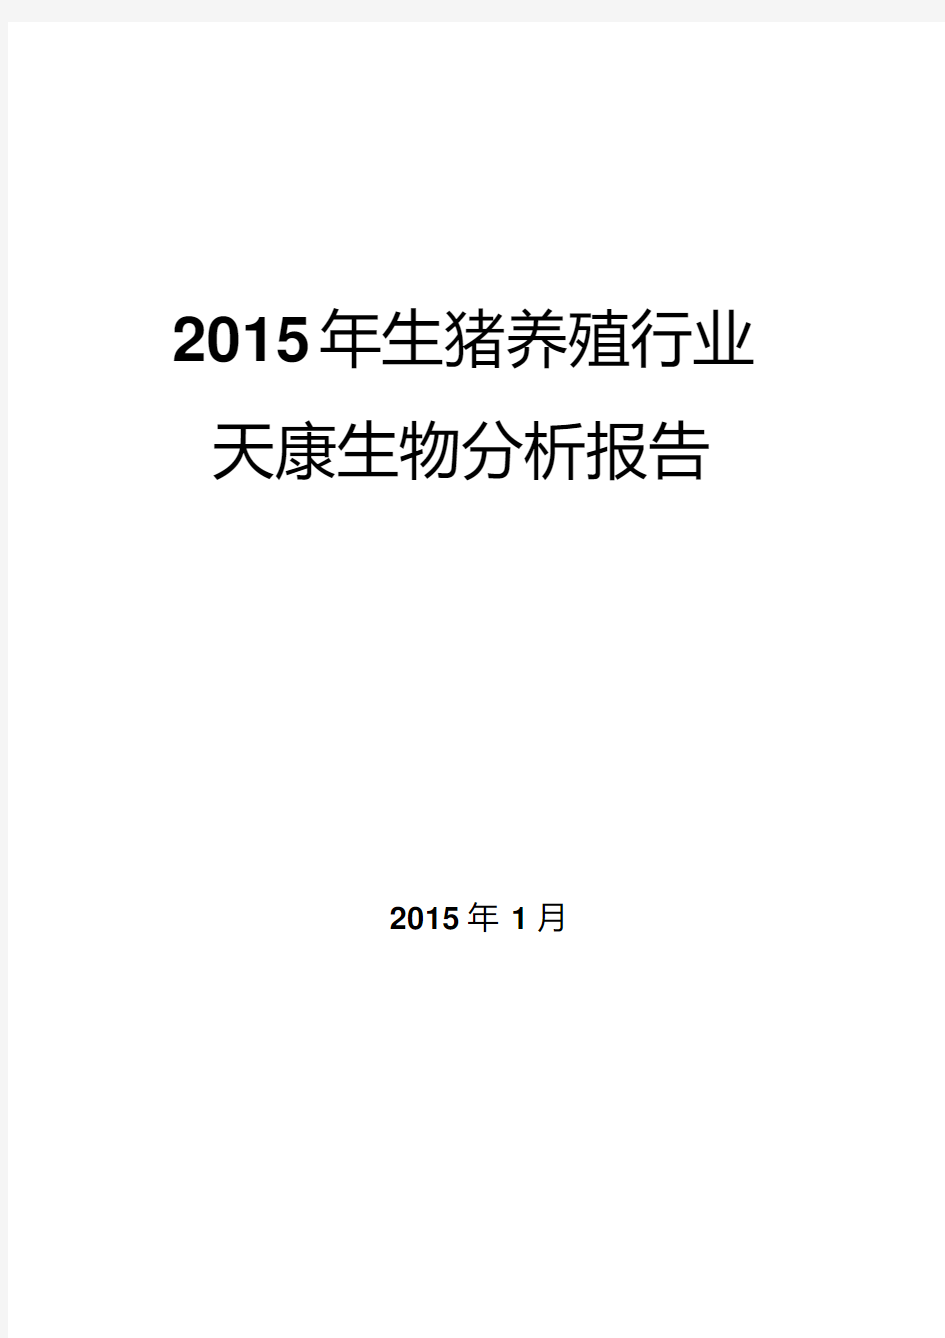 2015年生猪养殖行业分析报告